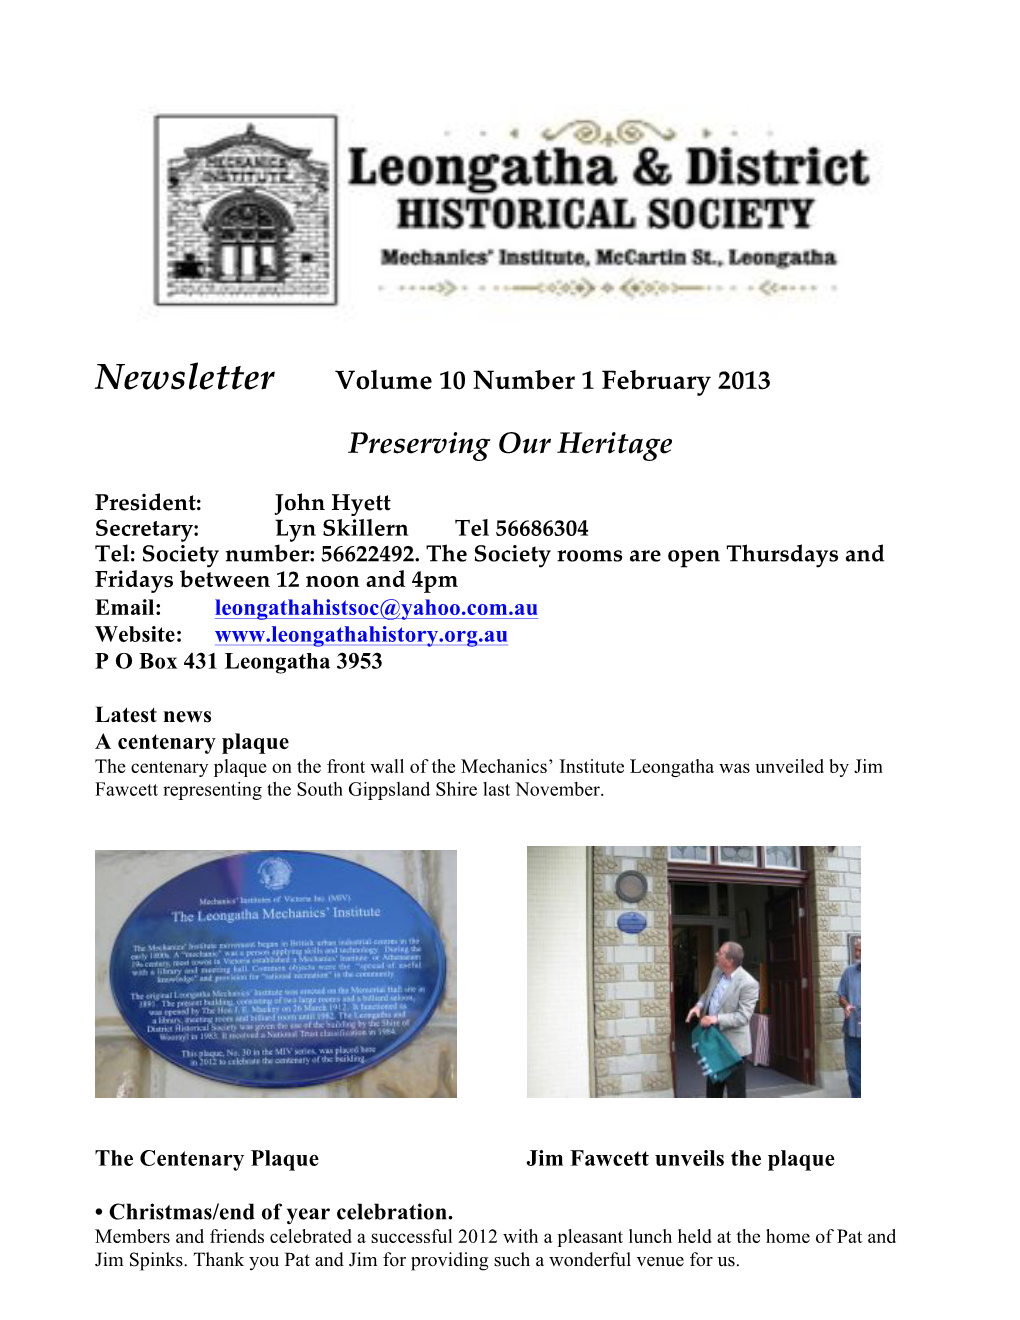 Newsletter Feb 2013